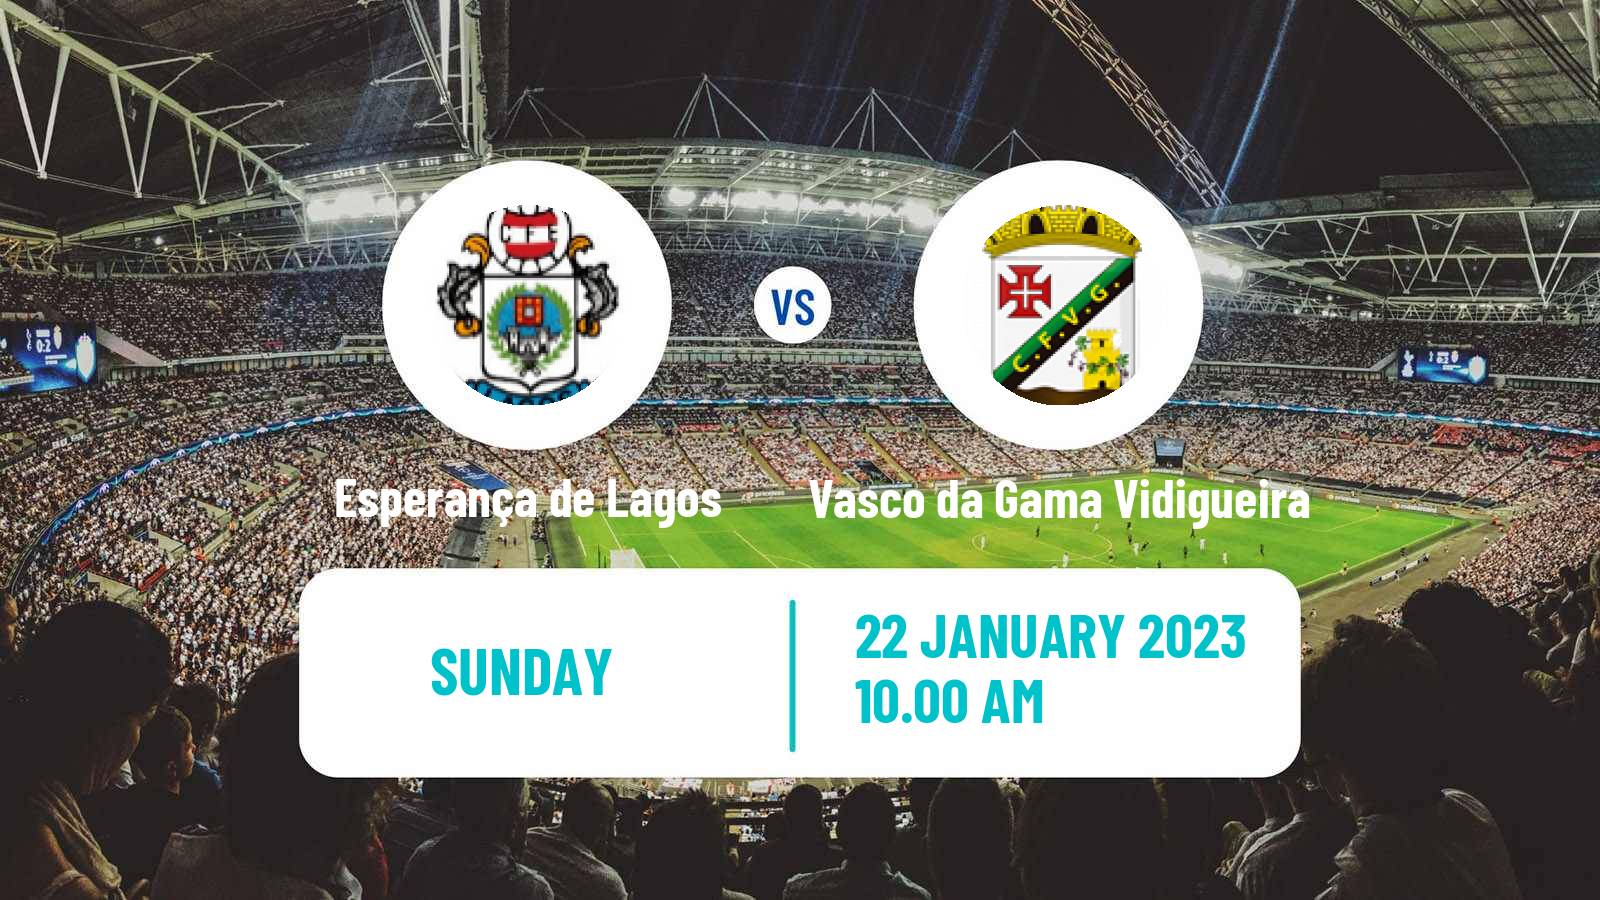 Soccer Campeonato de Portugal Esperança de Lagos - Vasco da Gama Vidigueira